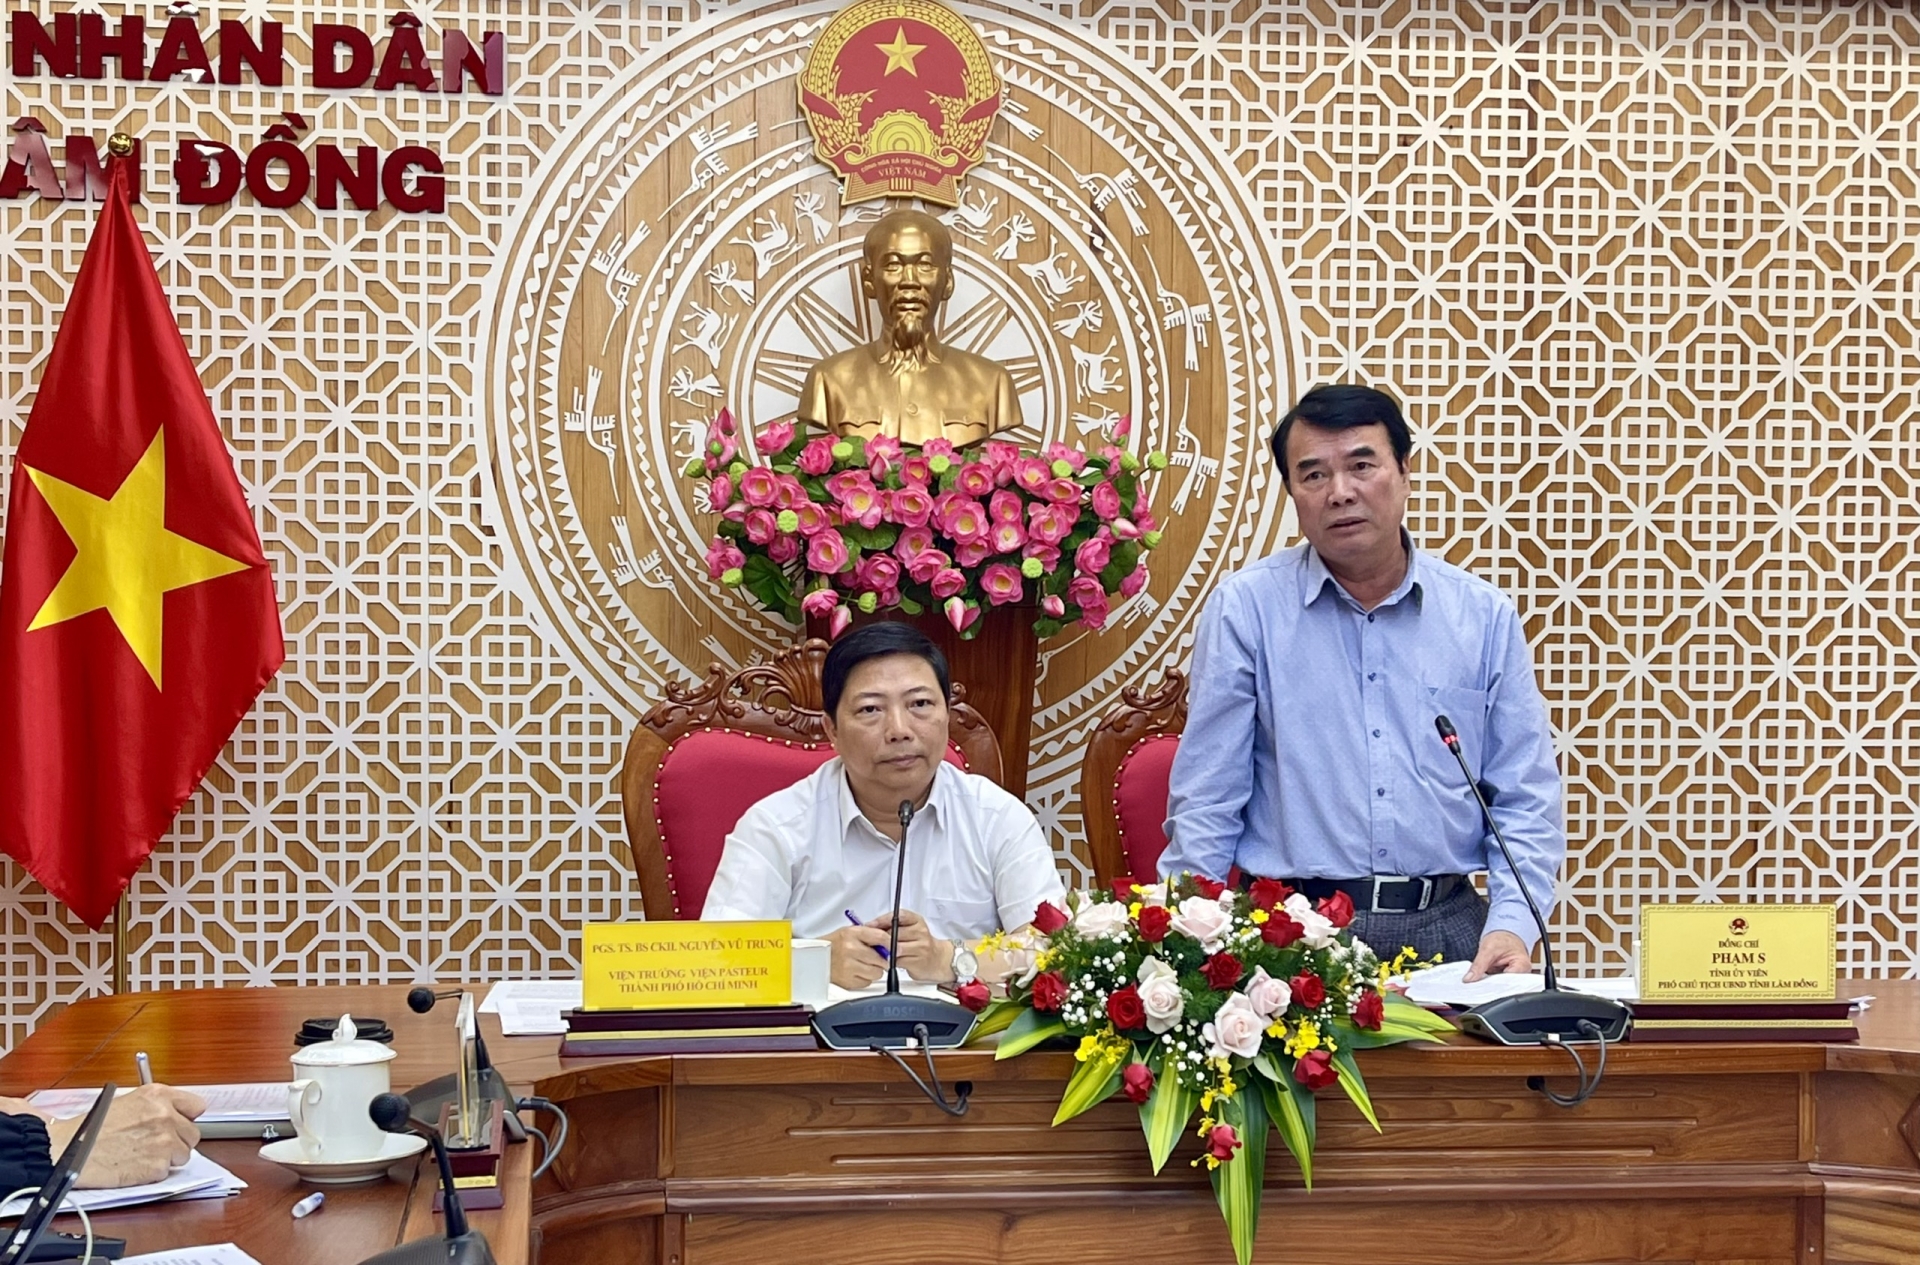 Ông Phạm S - Phó Chủ tịch UBND tỉnh Lâm Đồng thay mặt lãnh đạo tỉnh Lâm Đồng tiếp thu các ý kiến của đoàn công tác